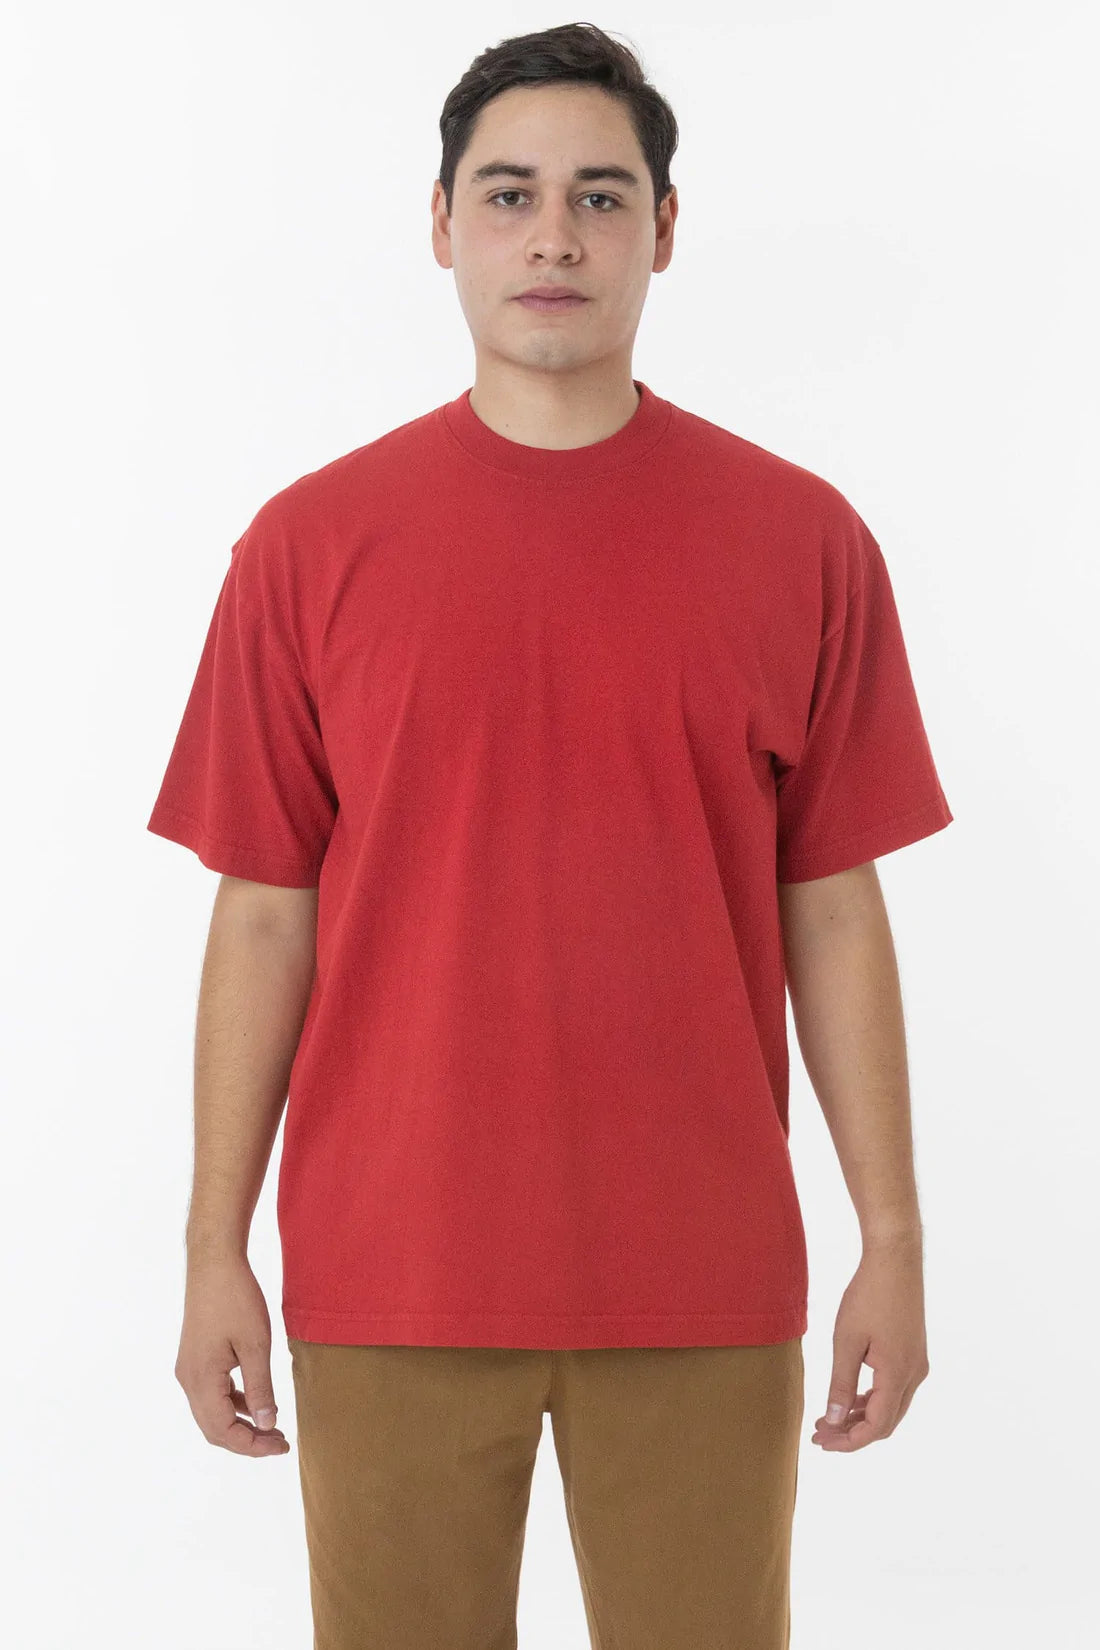 Los Angeles Apparel 6.5oz Pigment Dye Crew Neck S/S T-Shirt